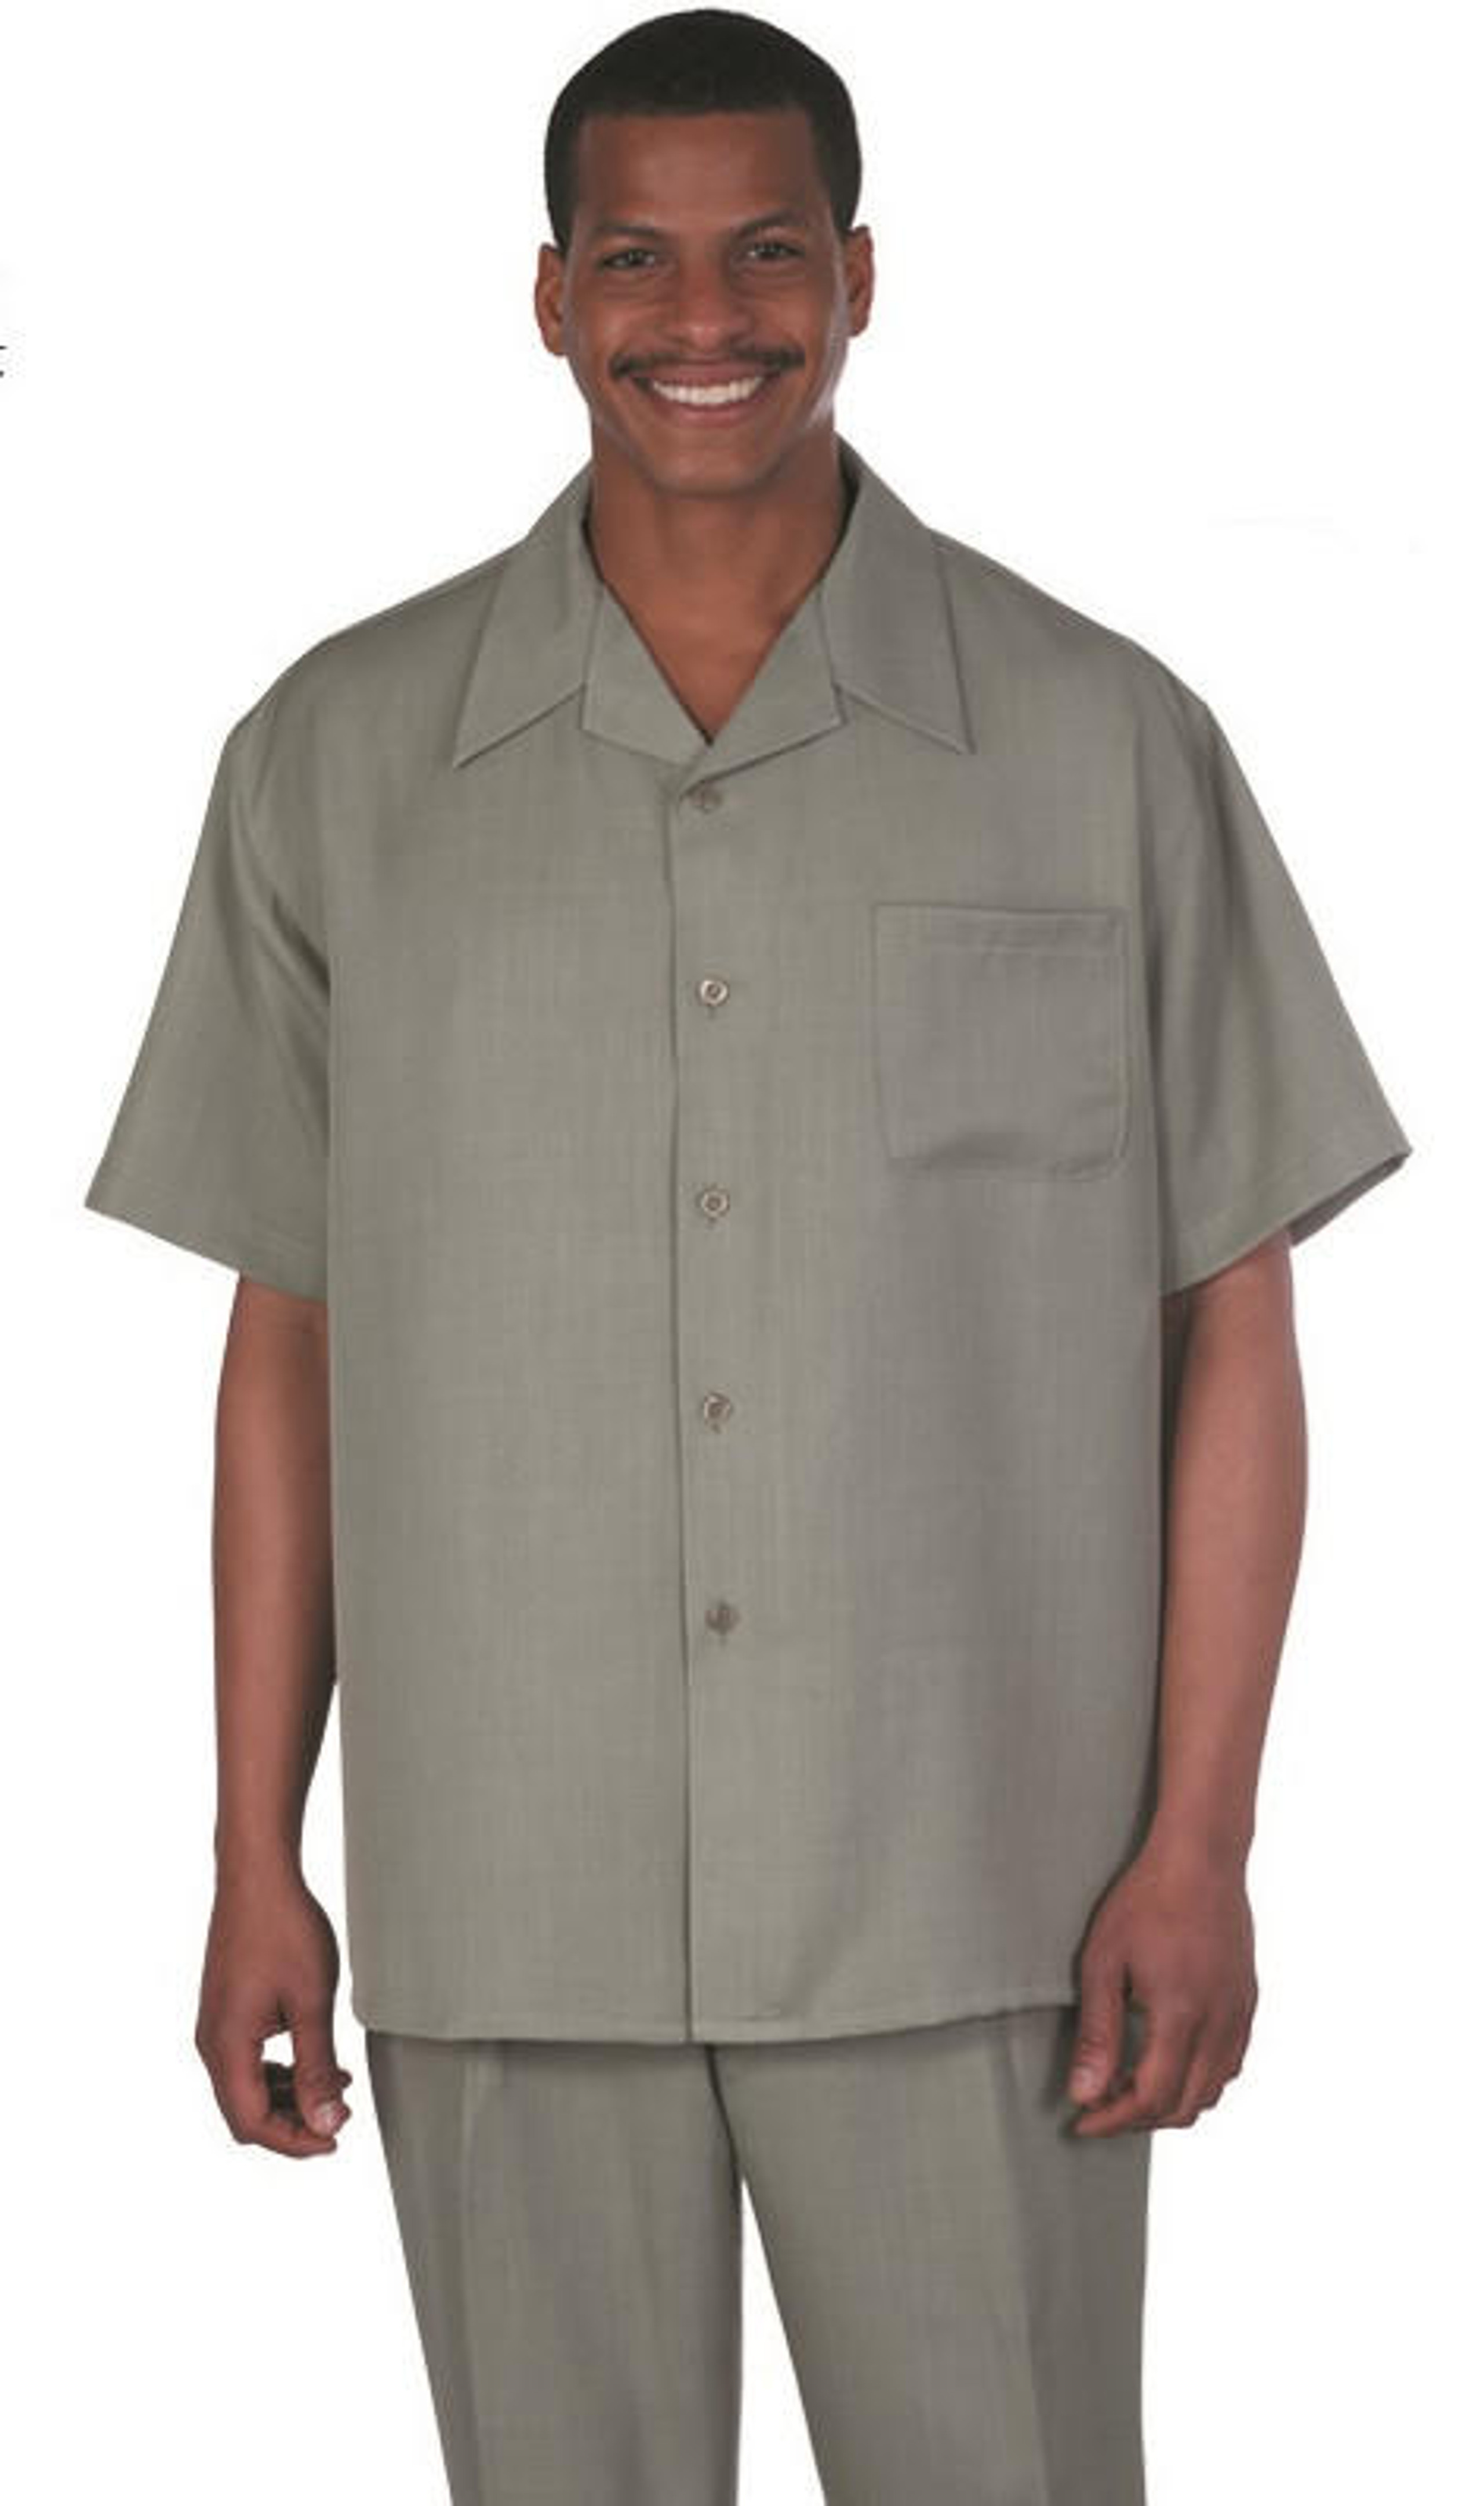 Montique Short Sleeve Walking Suit Tan Plaid Men's Cruise Wear 2315